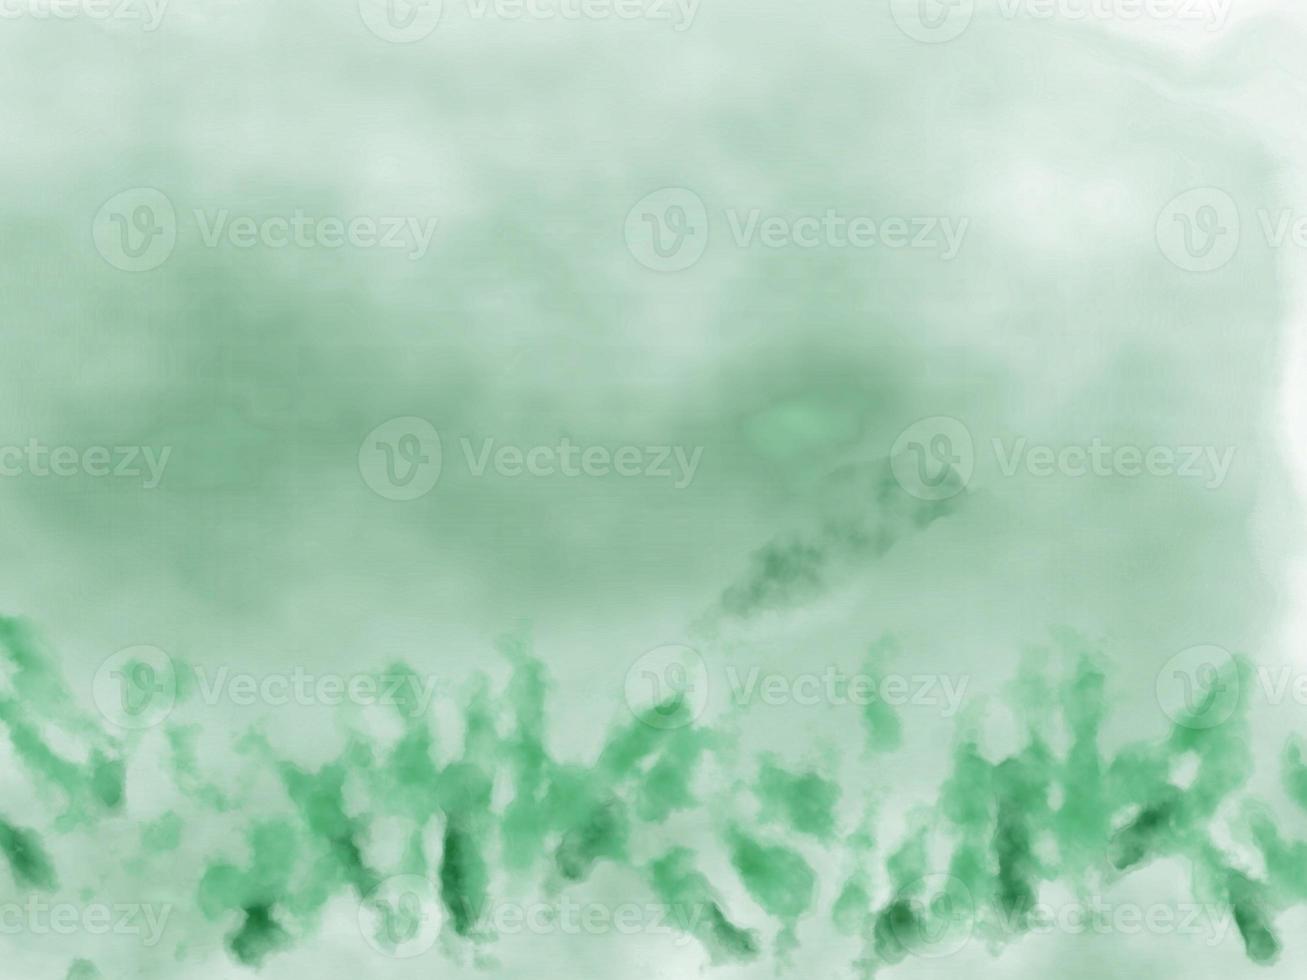 grünes gras aquarell abstrakte malerei hintergrund foto